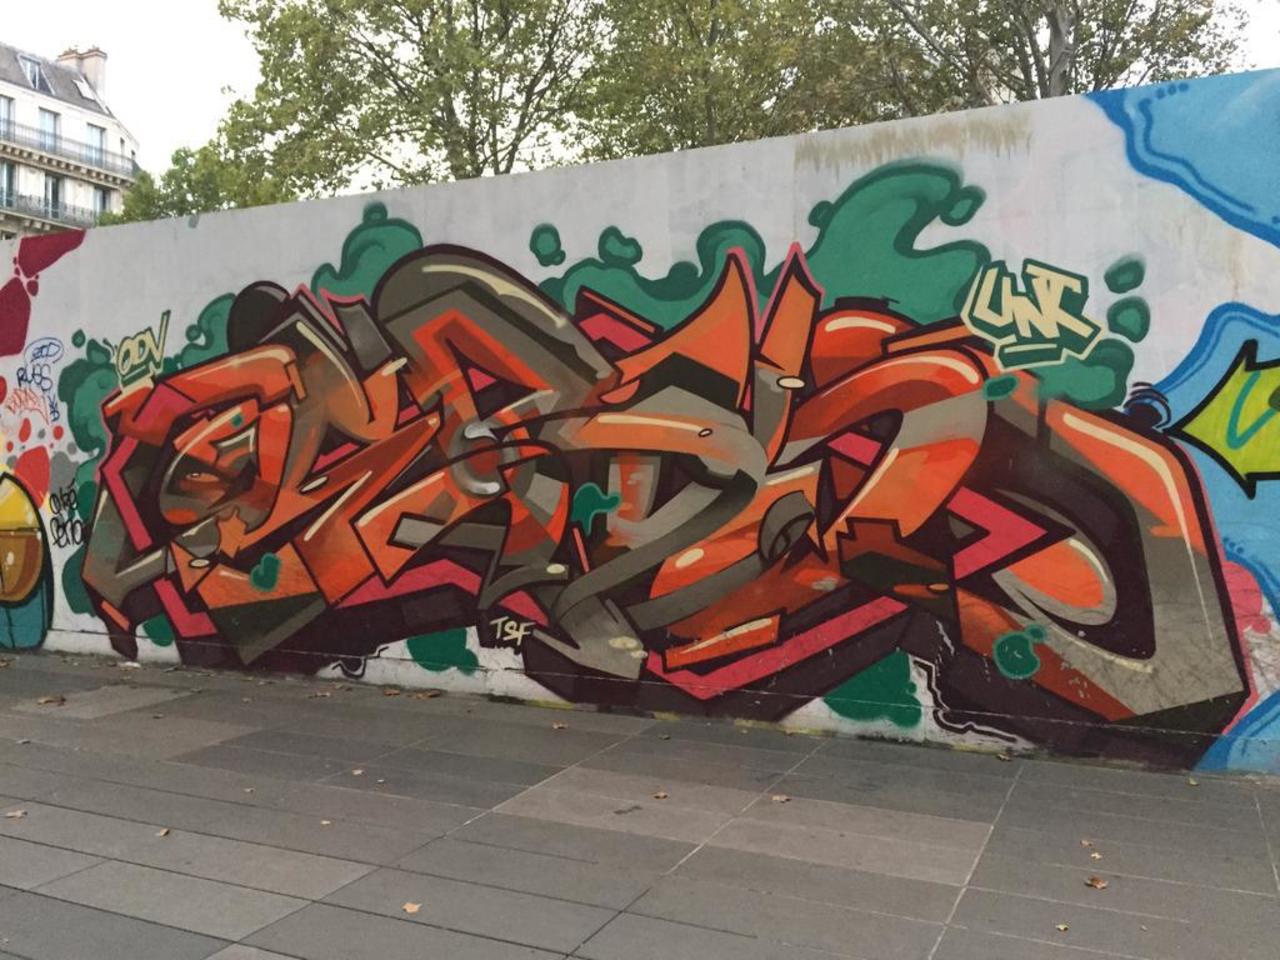 RT @UrbanArtParis: Quelques photos de la place de la republique pour wall works  #2  #graffiti  #streetart  #republique http://t.co/TQRsgm26Ve